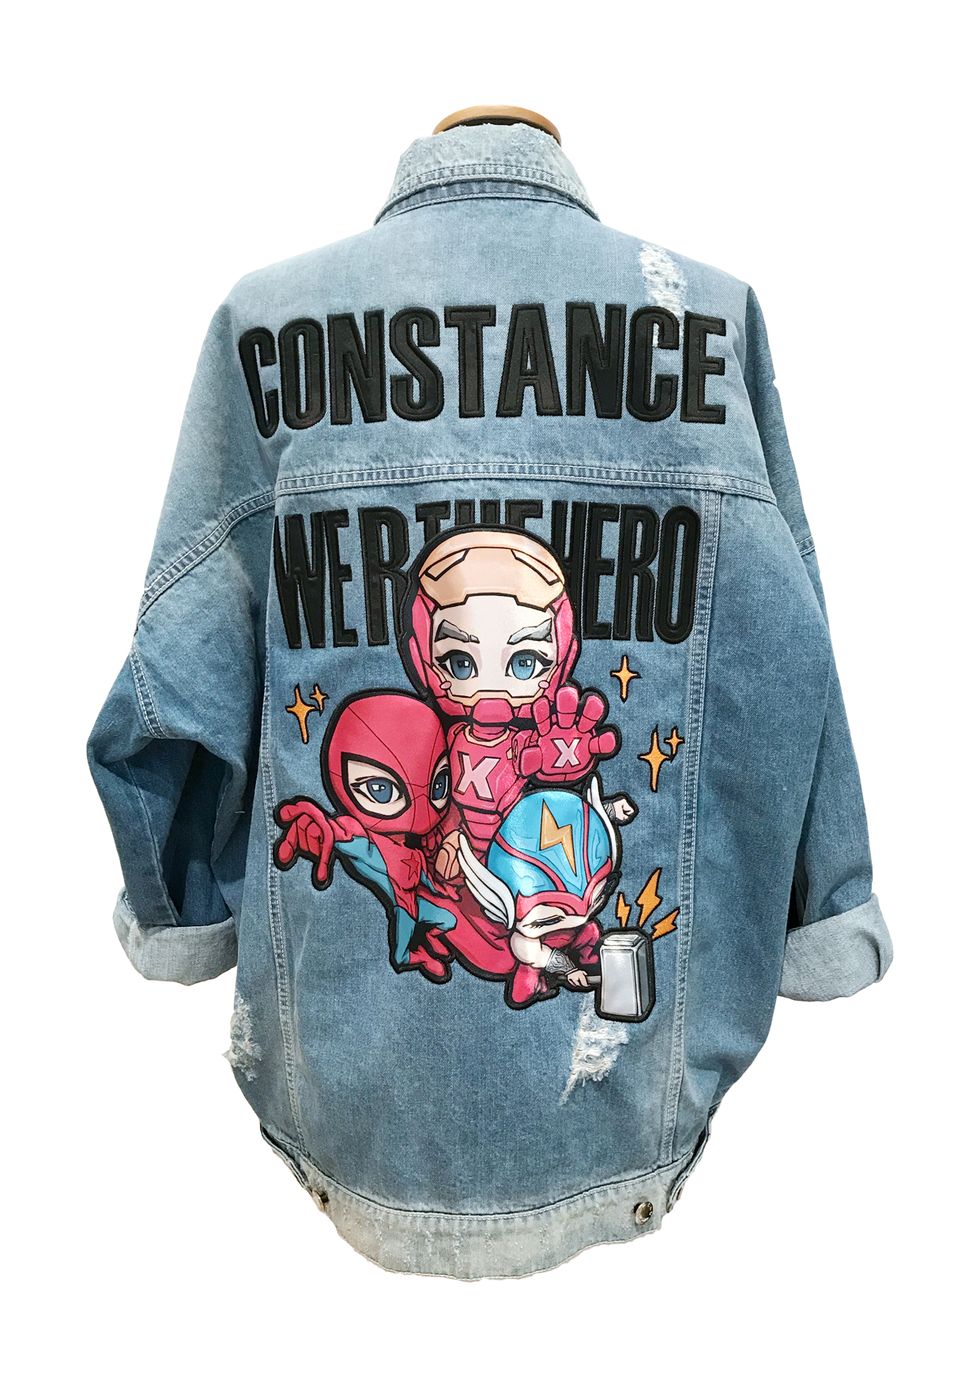 I nuovi bomber e le giacche di jeans Constance.C by Wendy Zhou, giovane designer cinese trapiantata a Milano, sono la tua prossima ossessione, il pezzo perfetto per completare i look primavera estate 2018.